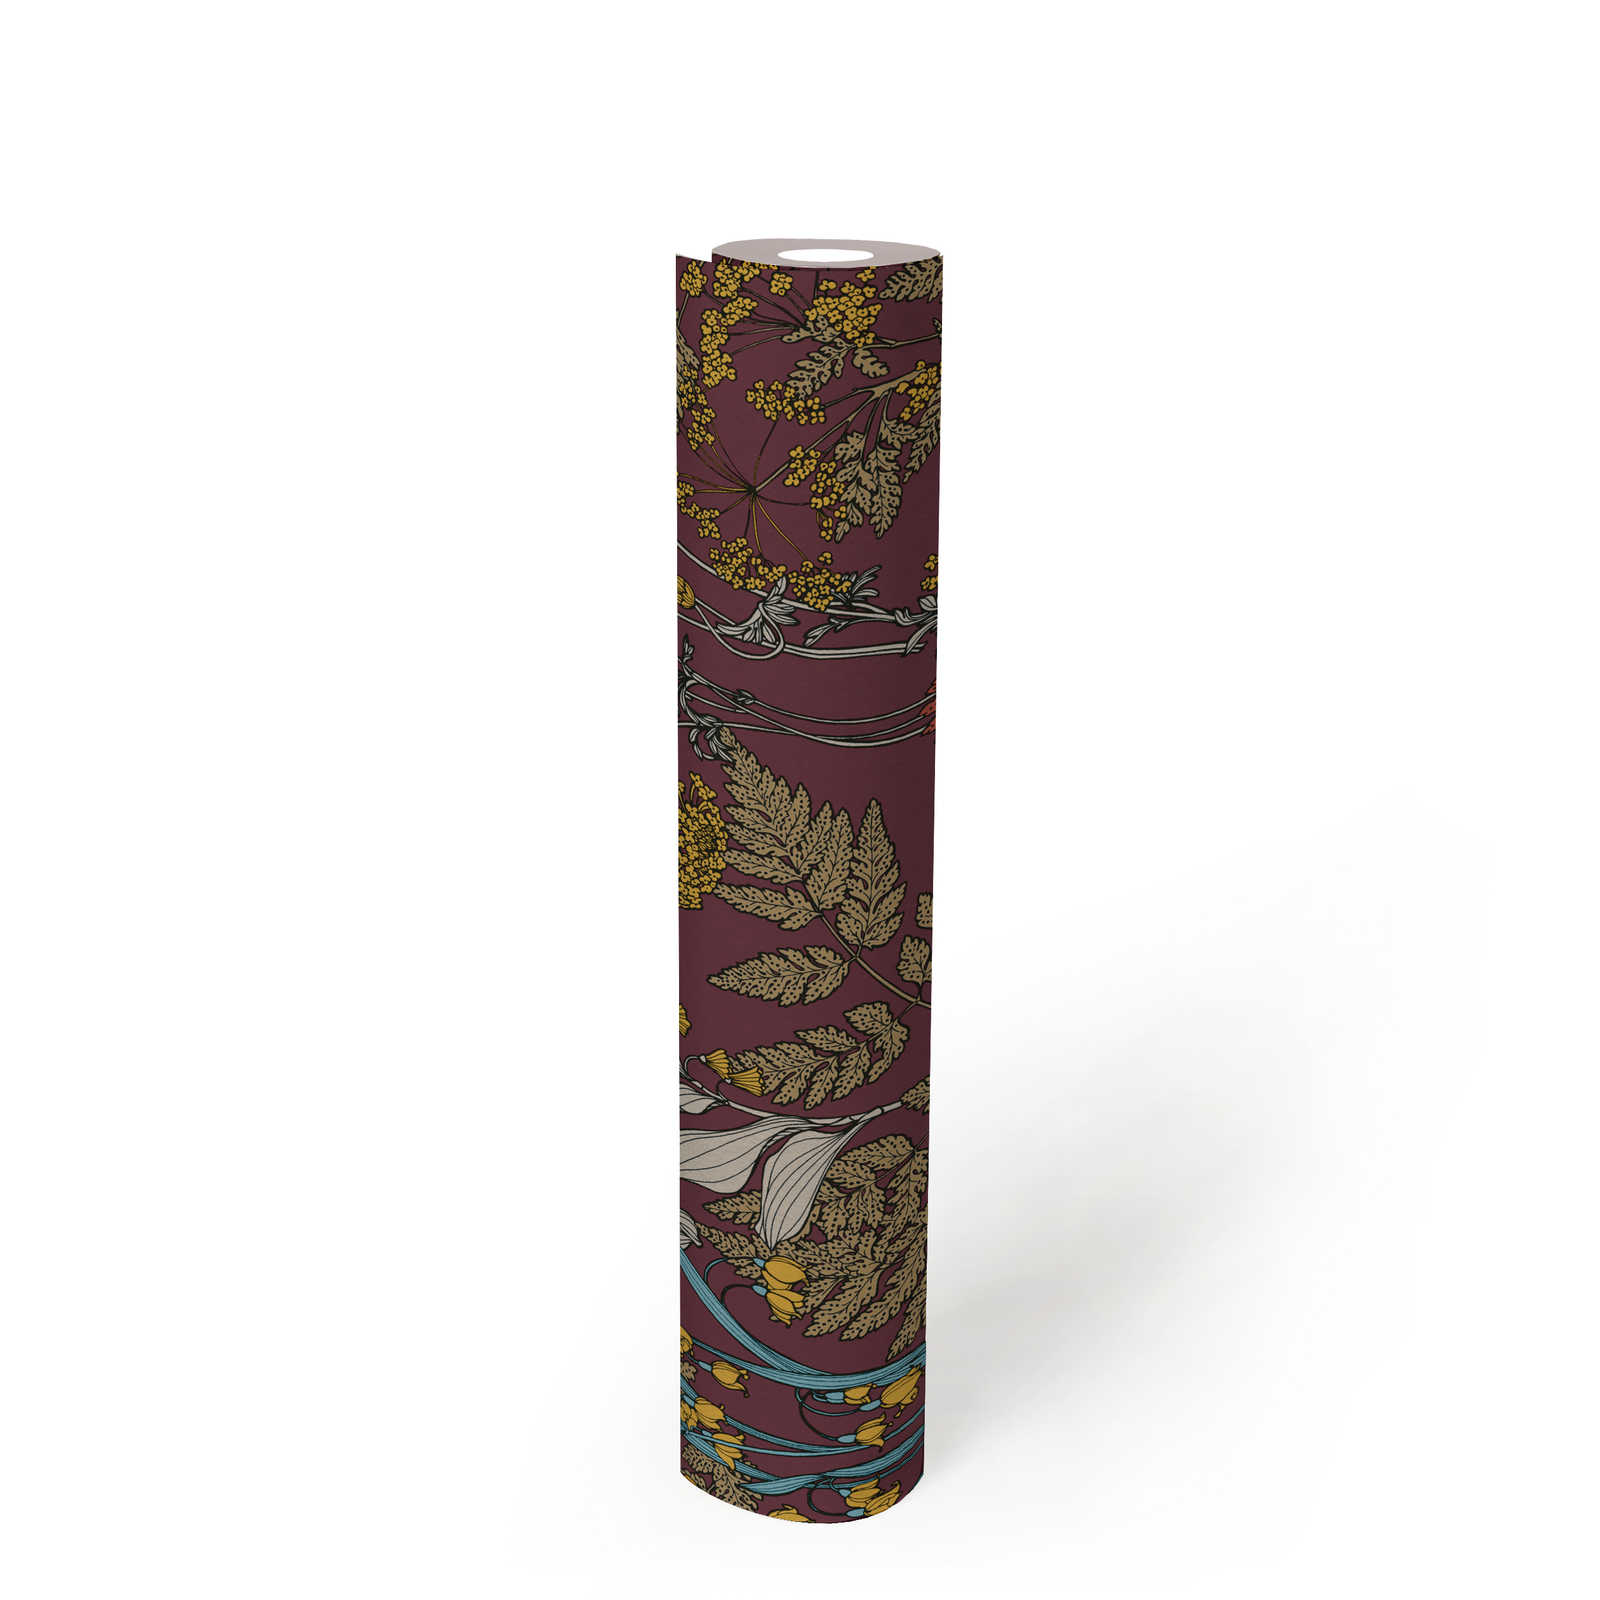             Lila Tapete mit buntem Blätter & Blumen Design – Rot, Gelb, Blau
        